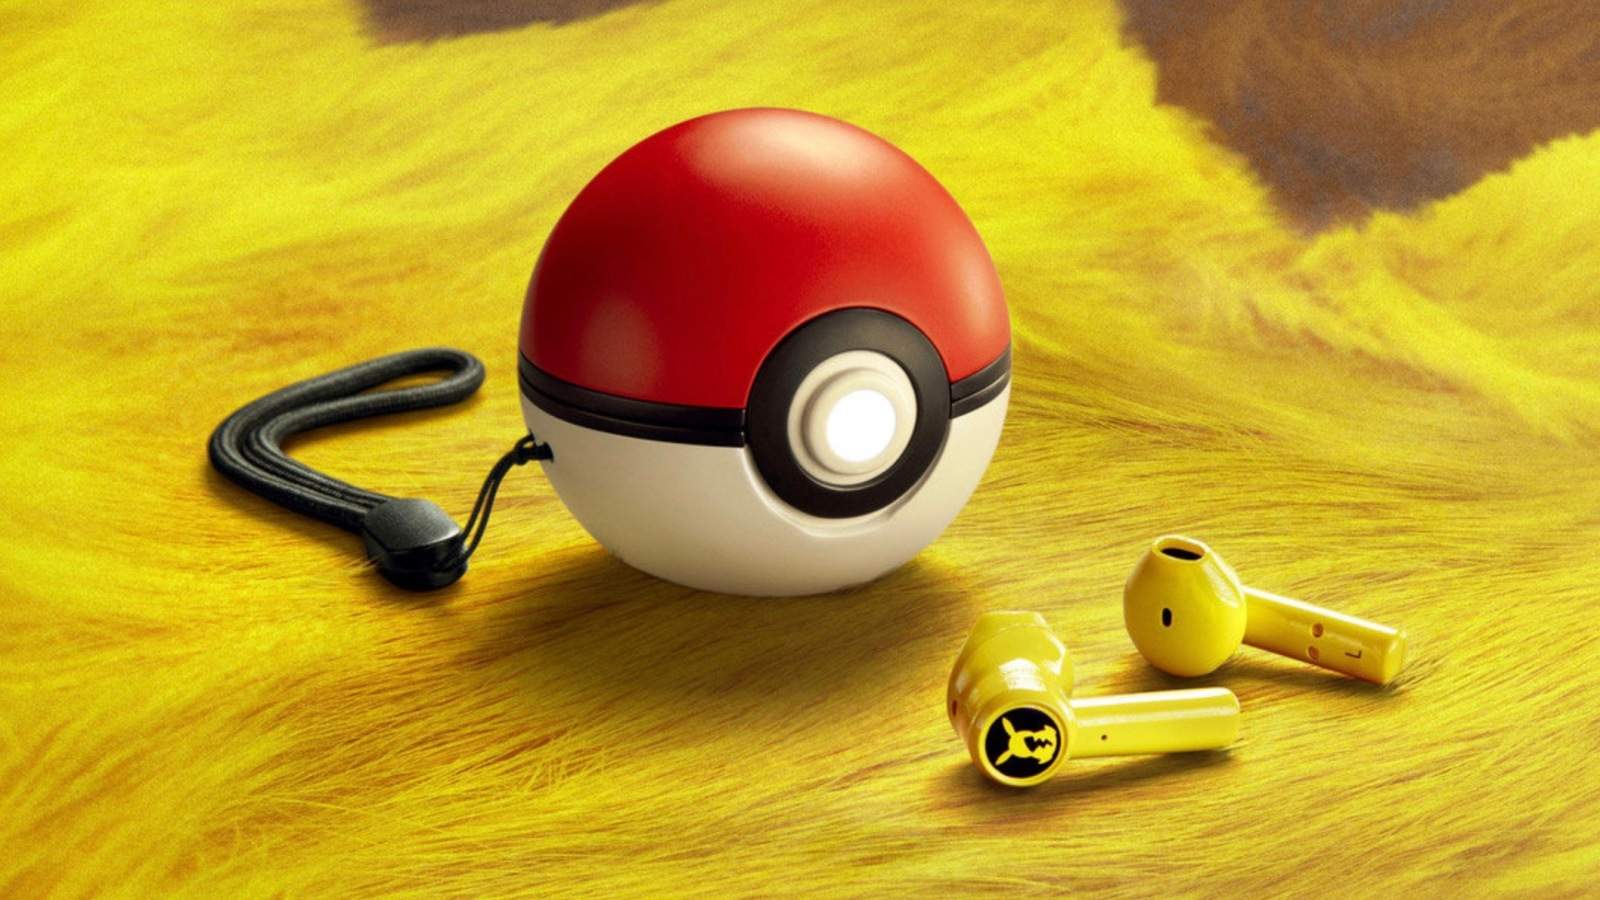 Razers Pikachu-Themen-Wireless-Ohrhörer werden in einem Pokeball aufgeladen